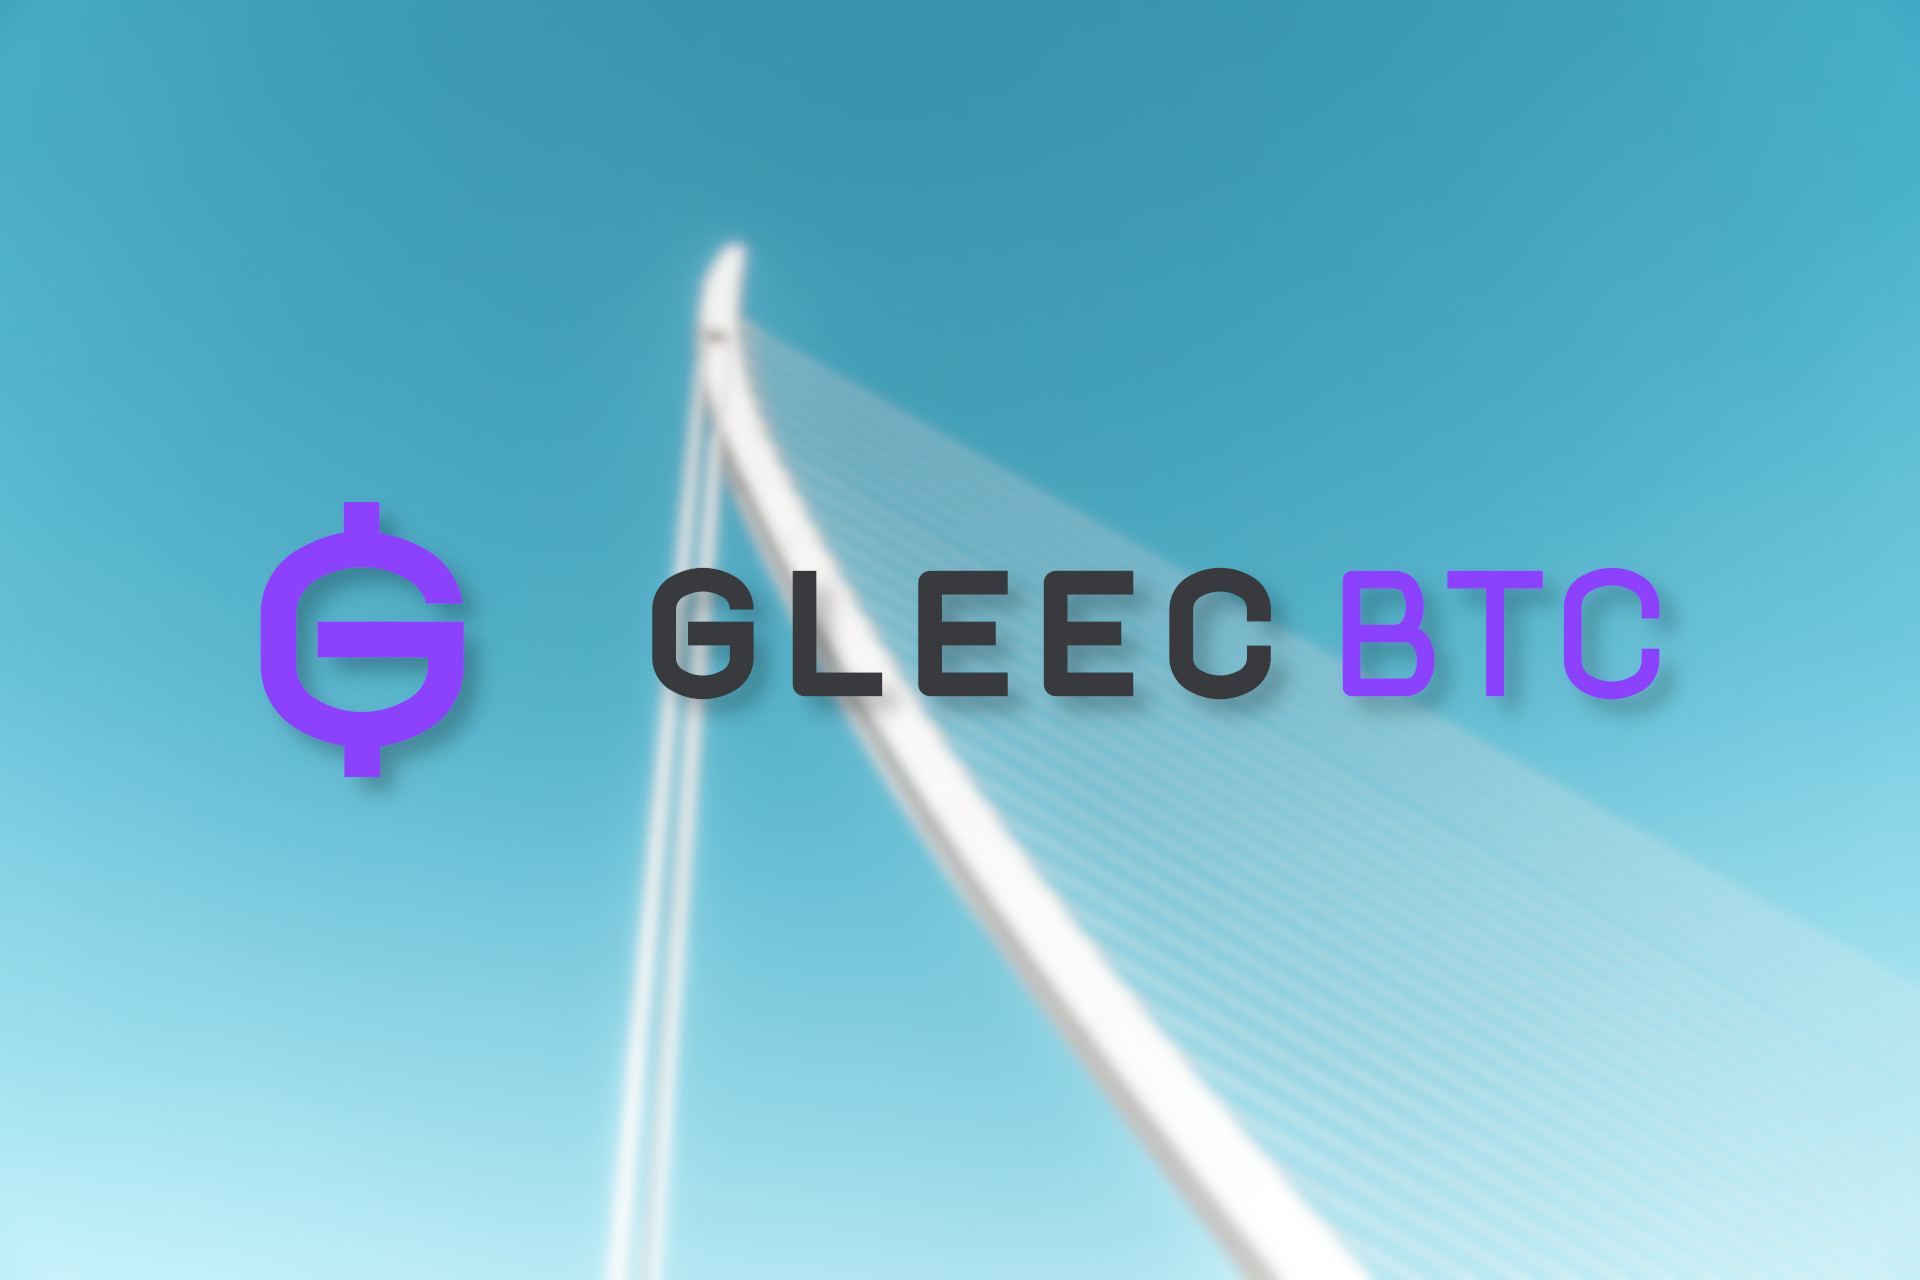 Gleec BTC logo cover image